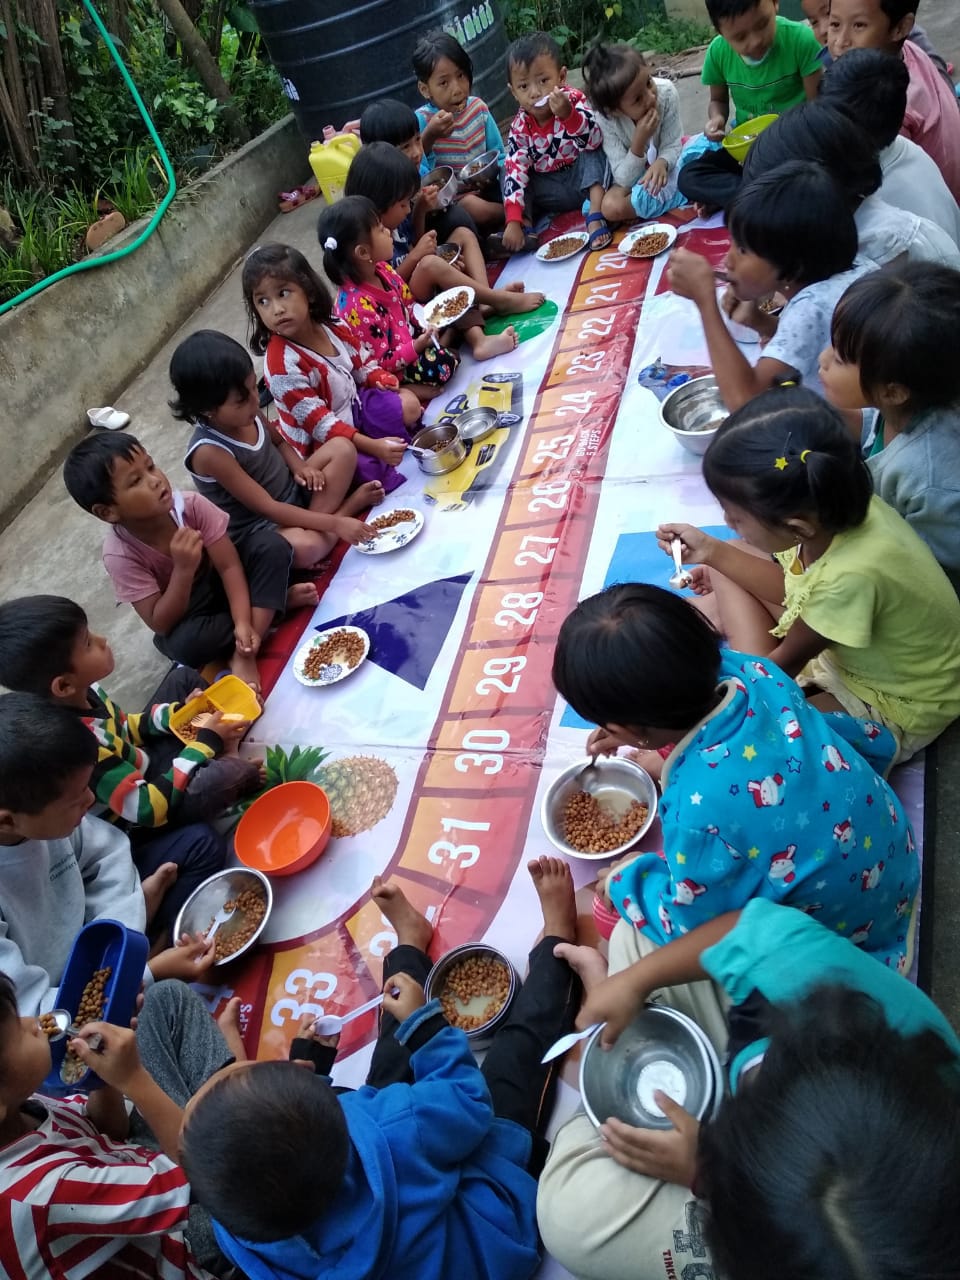 Children having meal